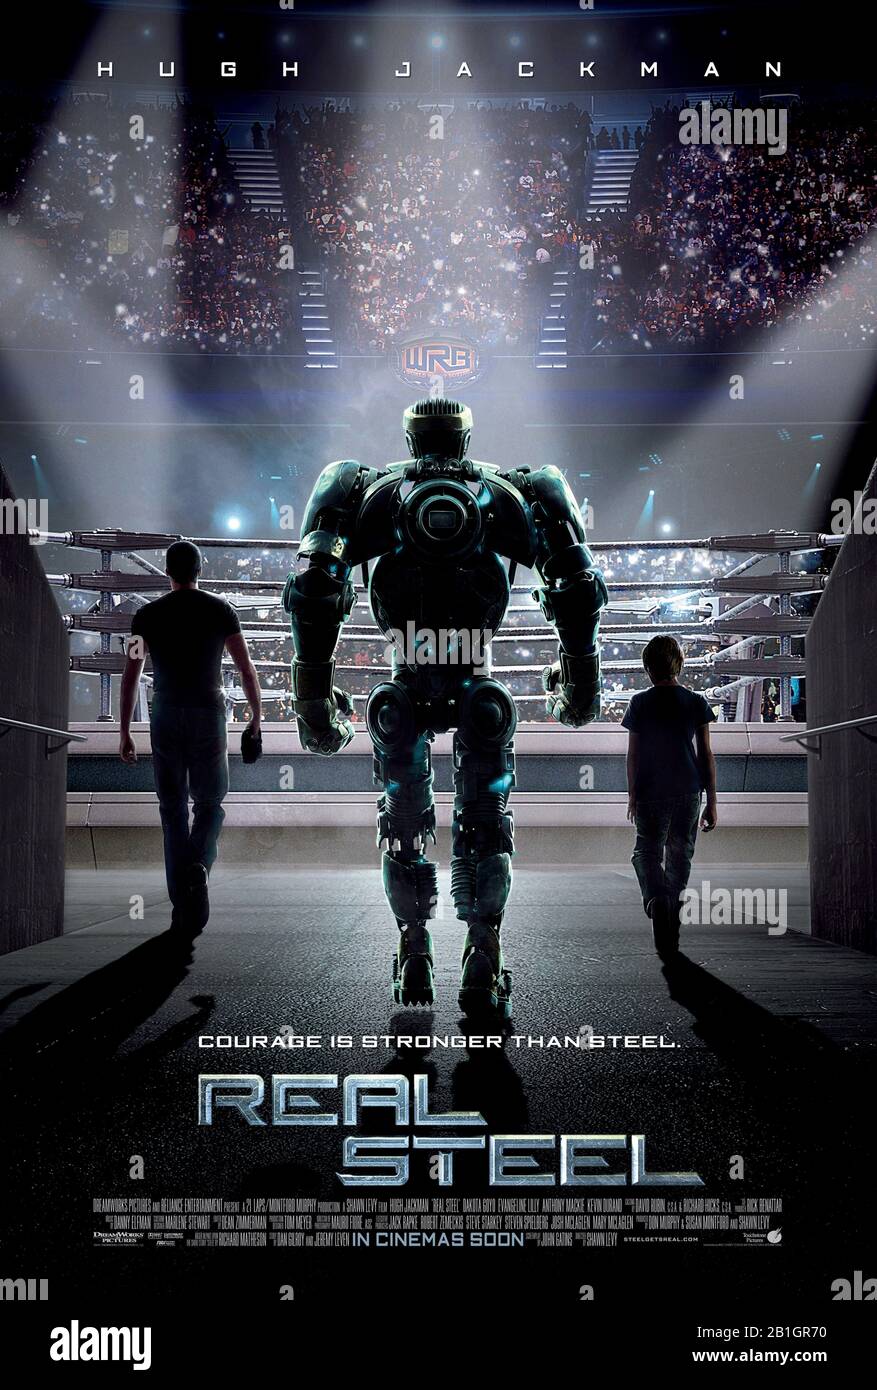 Real Steel (2011) unter der Regie von Shawn Levy und mit Hugh Jackman, Evangeline Lilly, Dakota Goyo und Anthony Mackie in den Hauptrollen. In naher Zukunft steuern Menschen Roboterboxer und kämpfen für den Sport, basierend auf einer Kurzgeschichte von Richard Matheson. Stockfoto